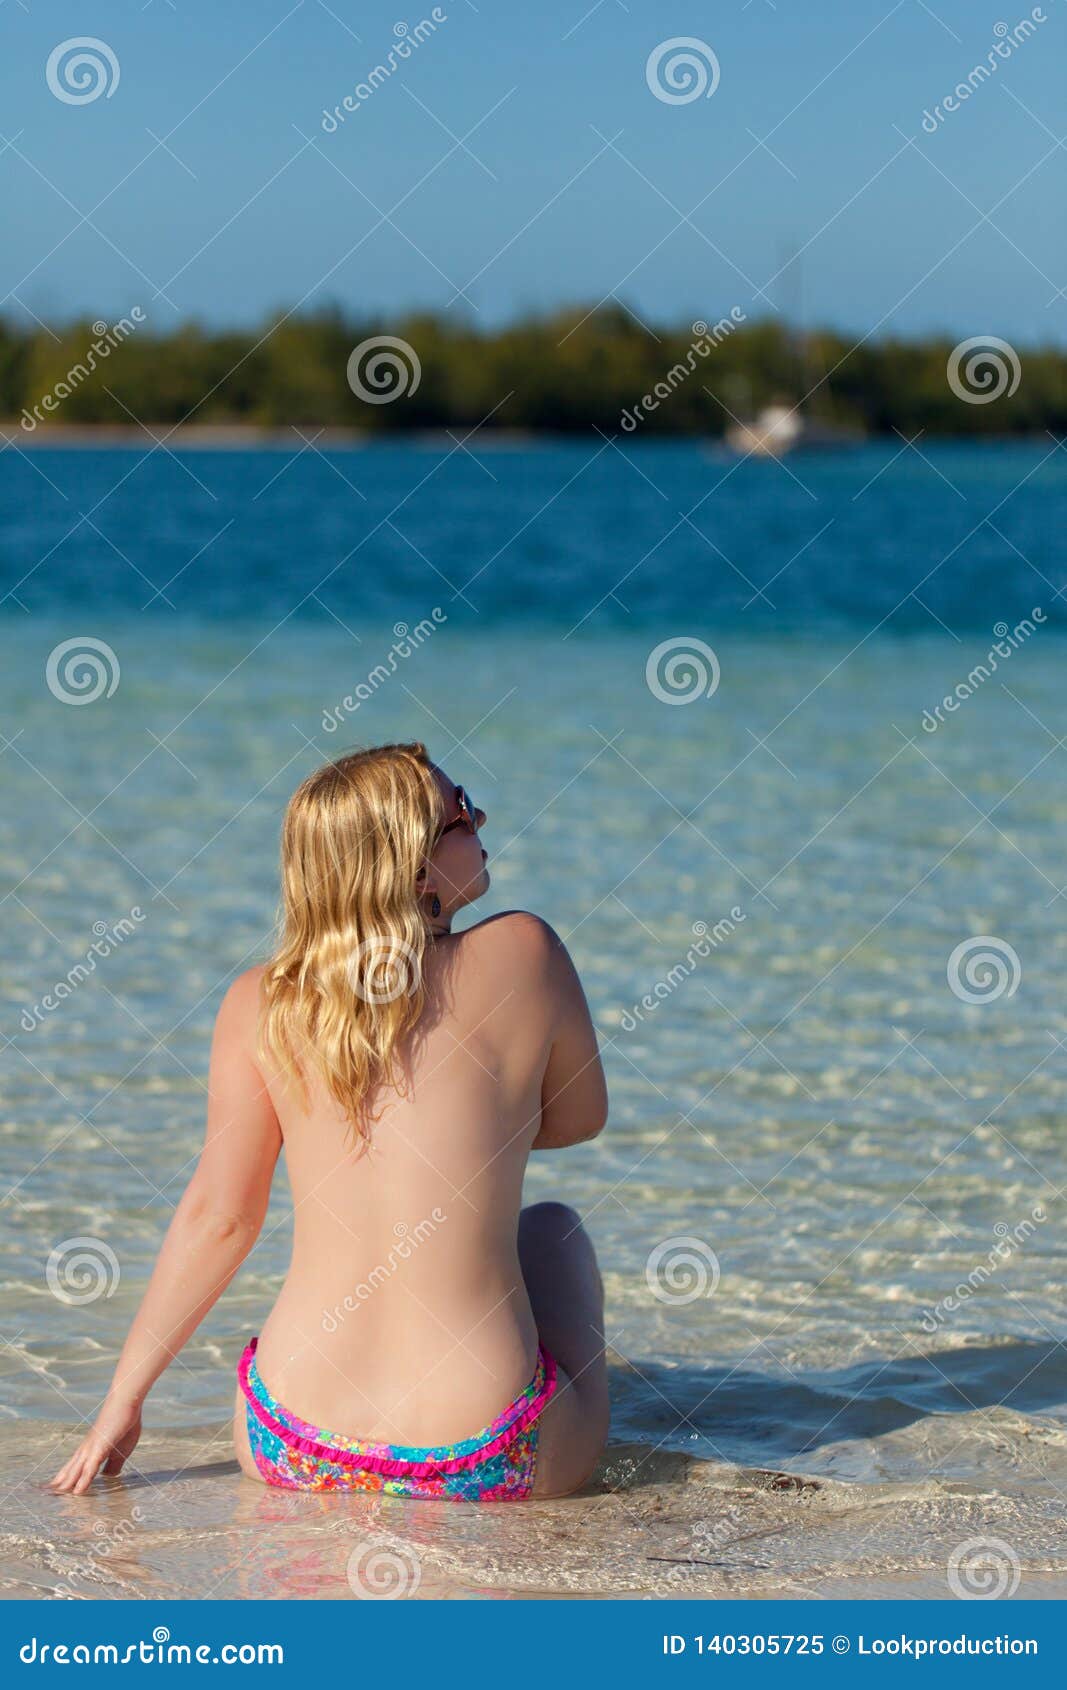 Beach naked girls Beach sex